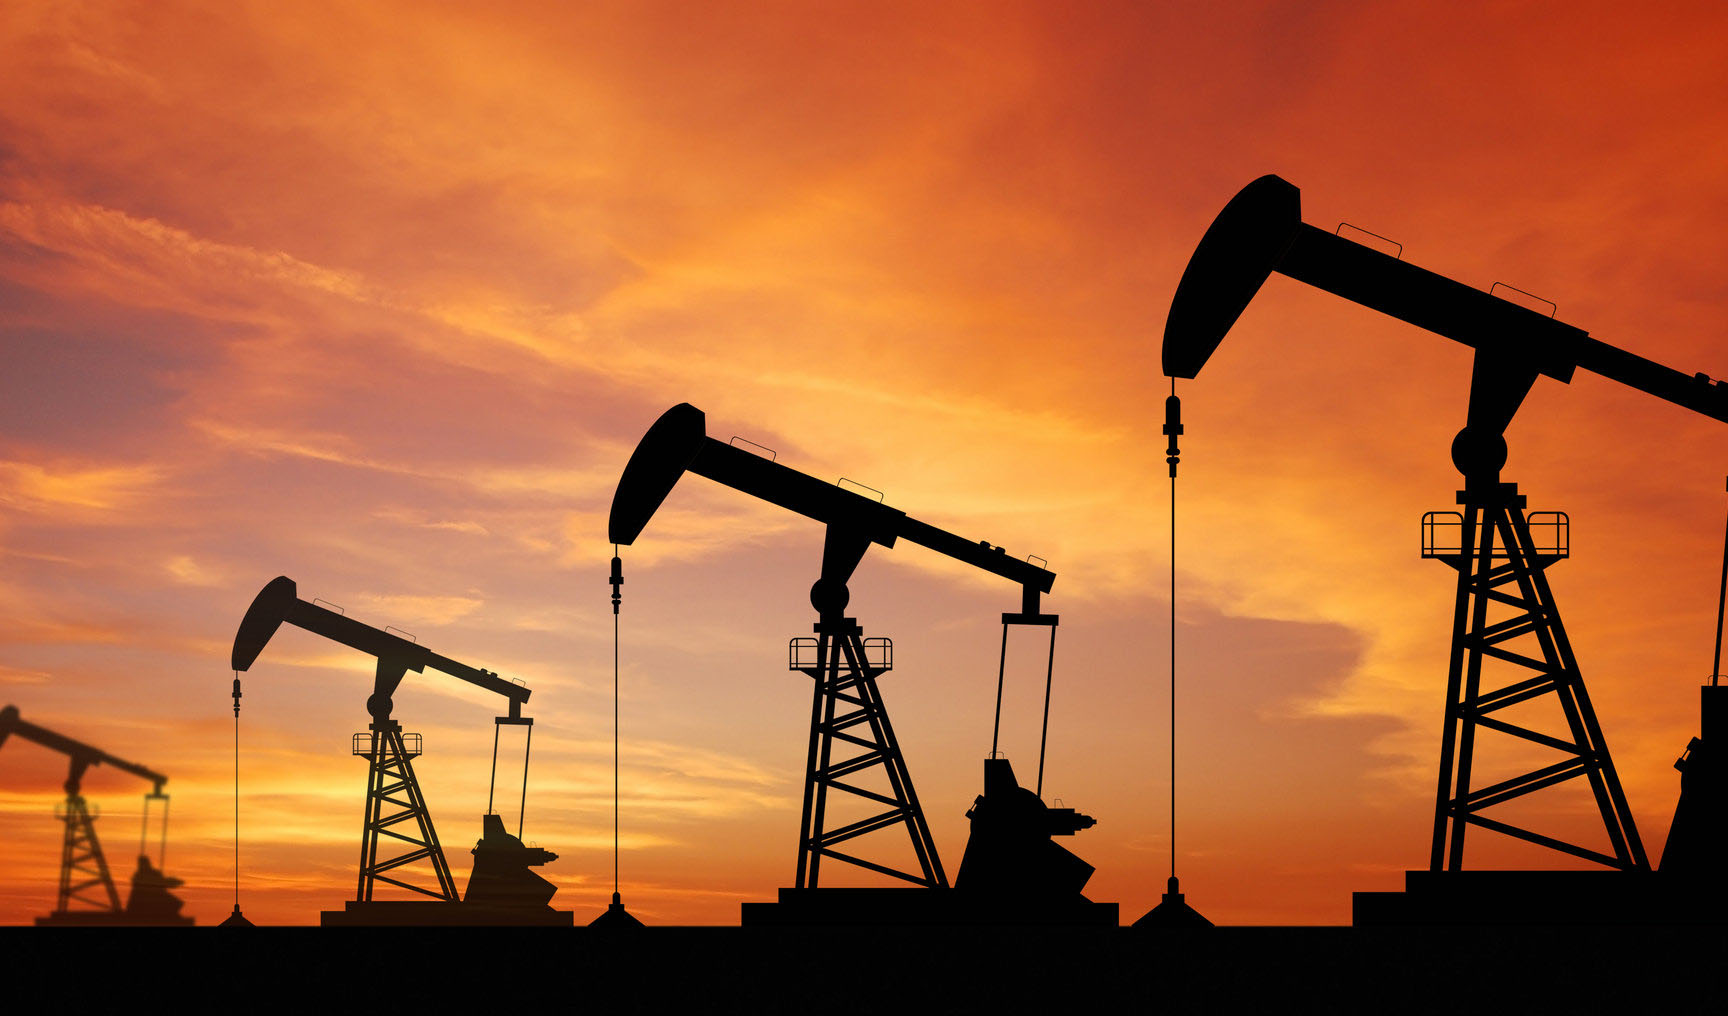 روسیه رتبه دوم صادرات نفت به چین را کسب کرد